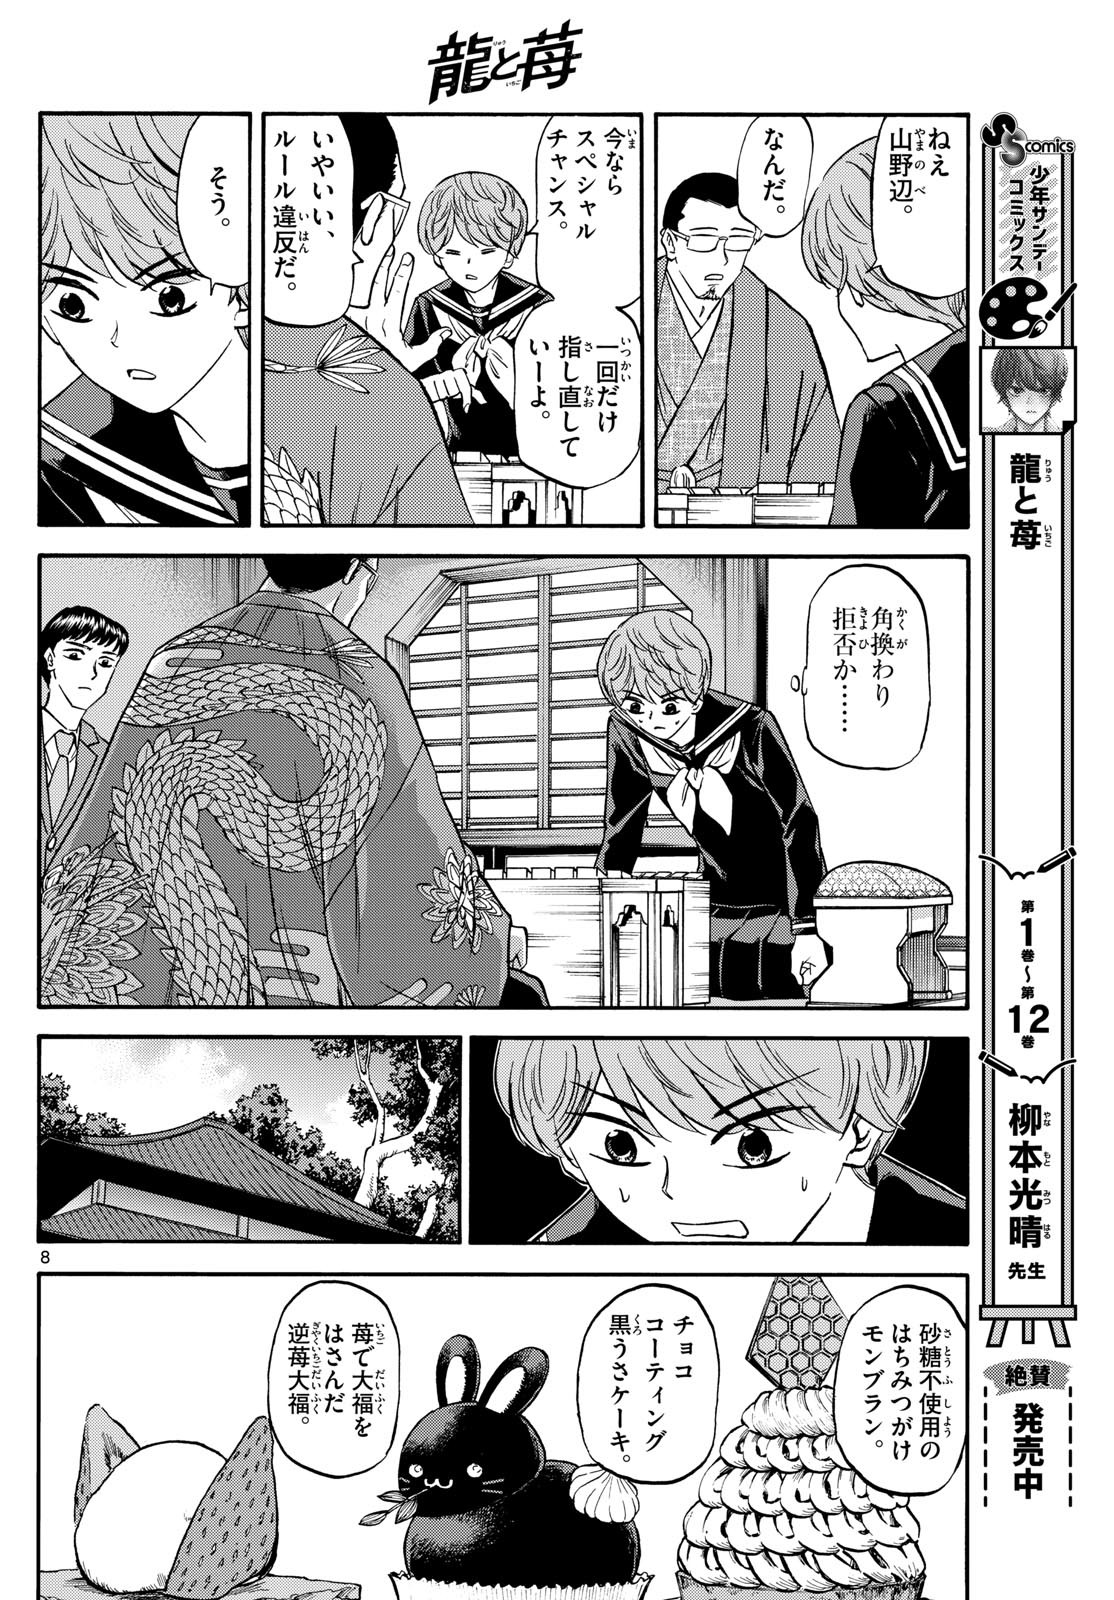 Ryu-to-Ichigo - Chapter 159 - Page 8